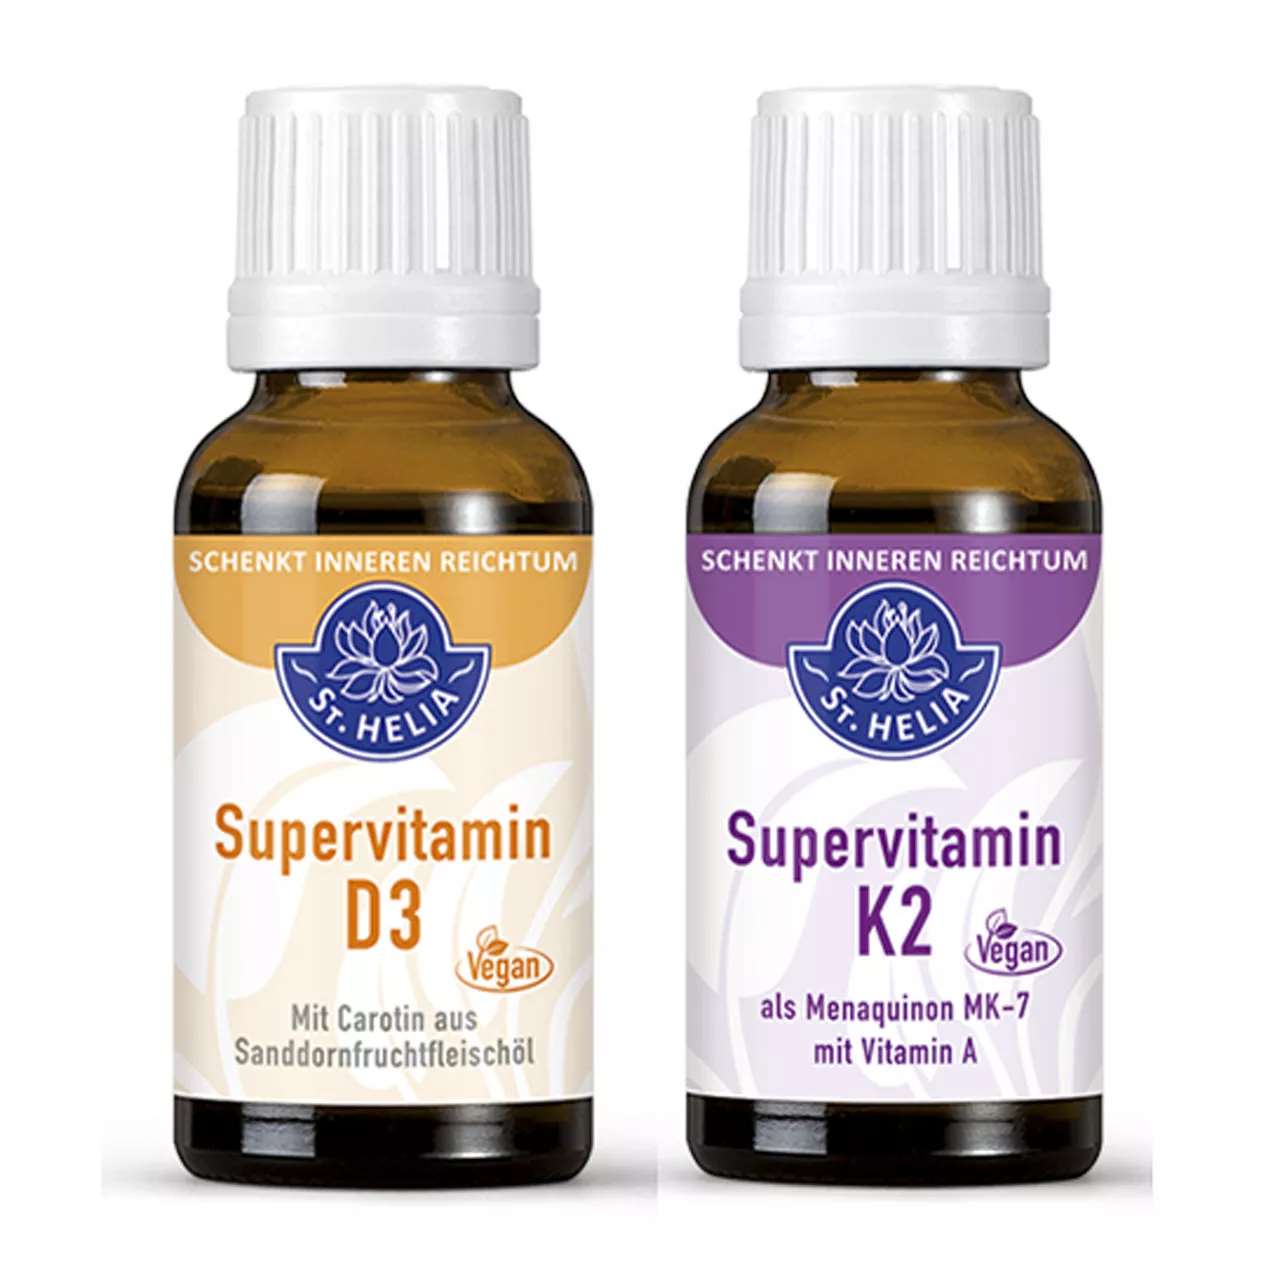 St. Helia Sparpaket Vitamin D3 + K2 beinhaltet 2 mal 20 Milliliter